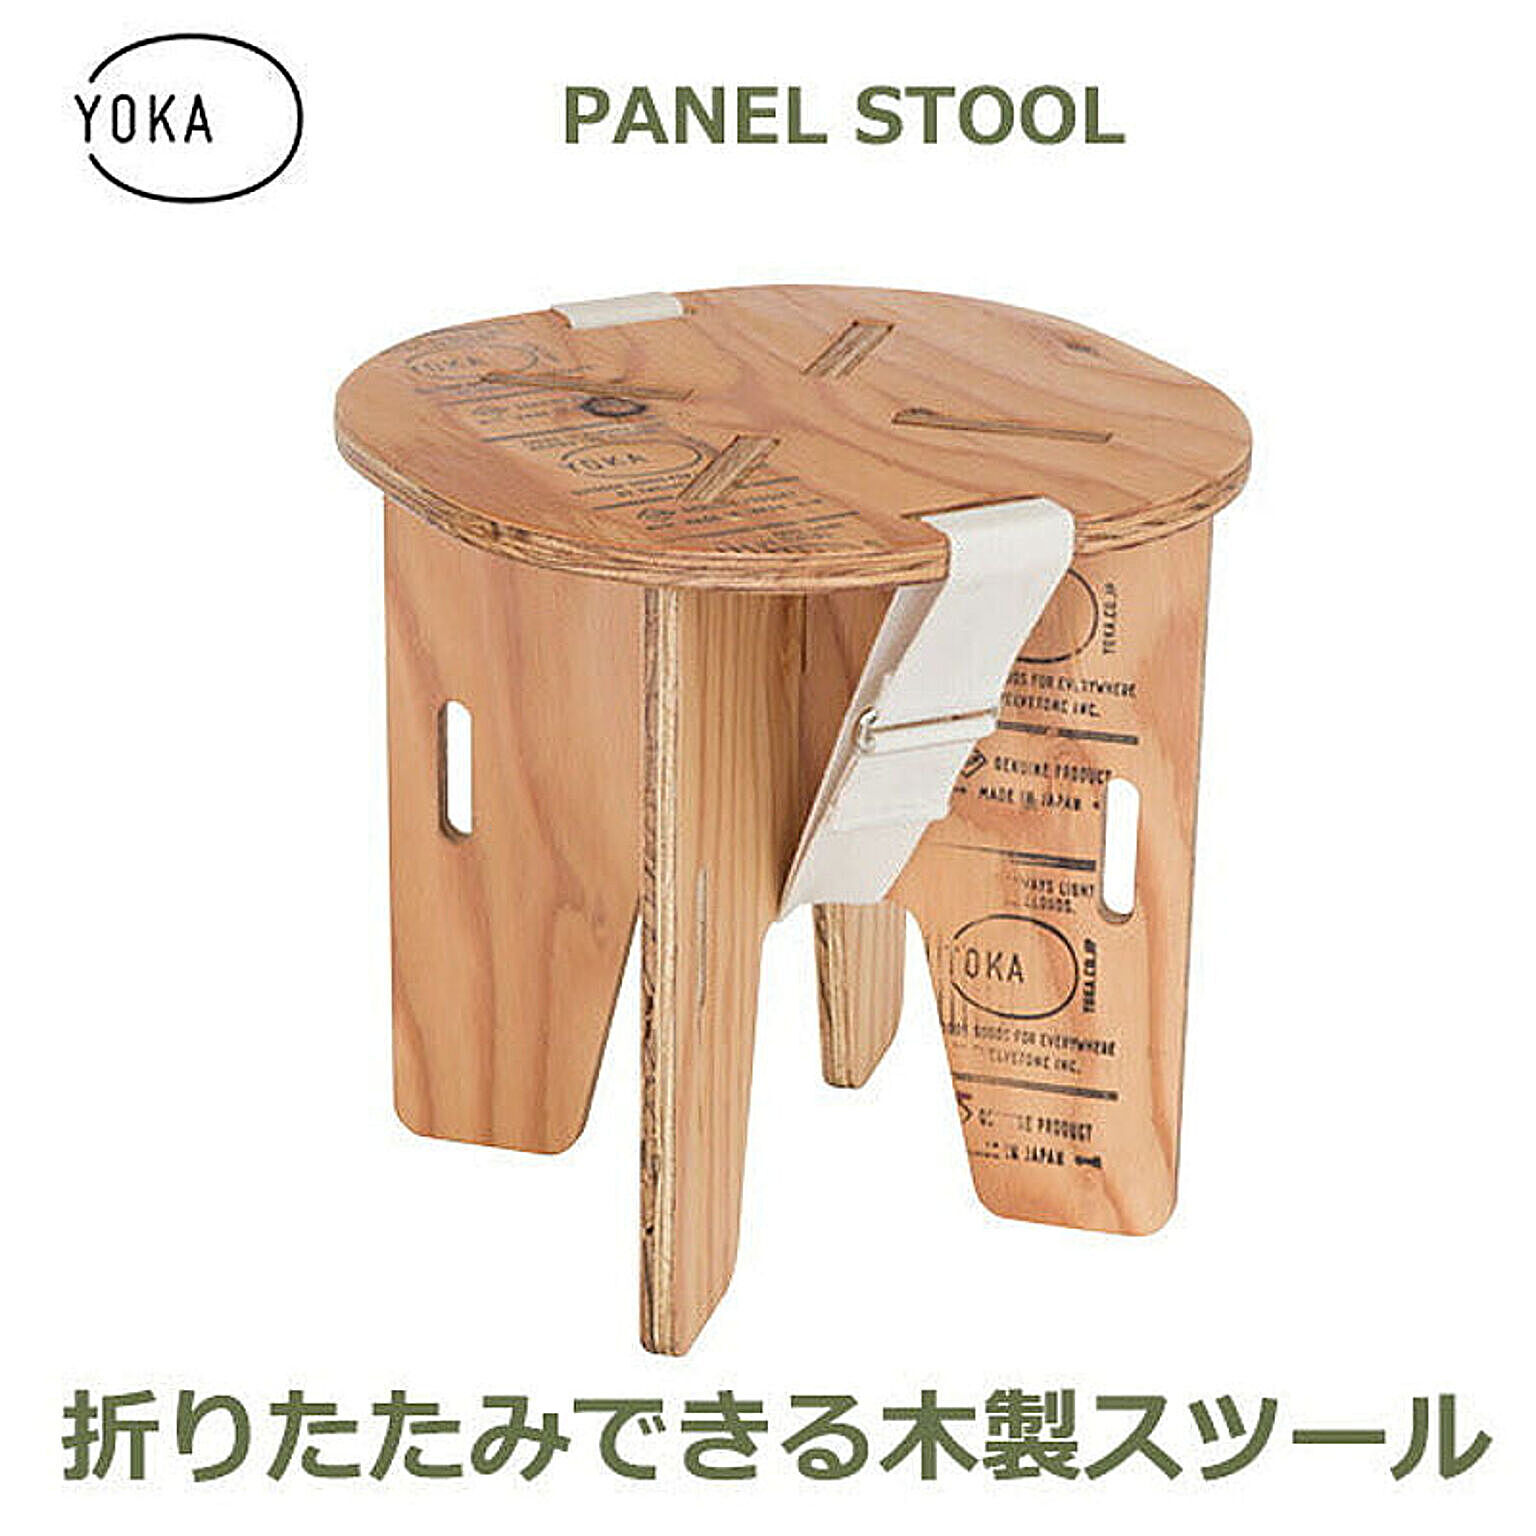 株式会社twelvetone YOKA パネルスツール ウレタン塗装済 - 通販 